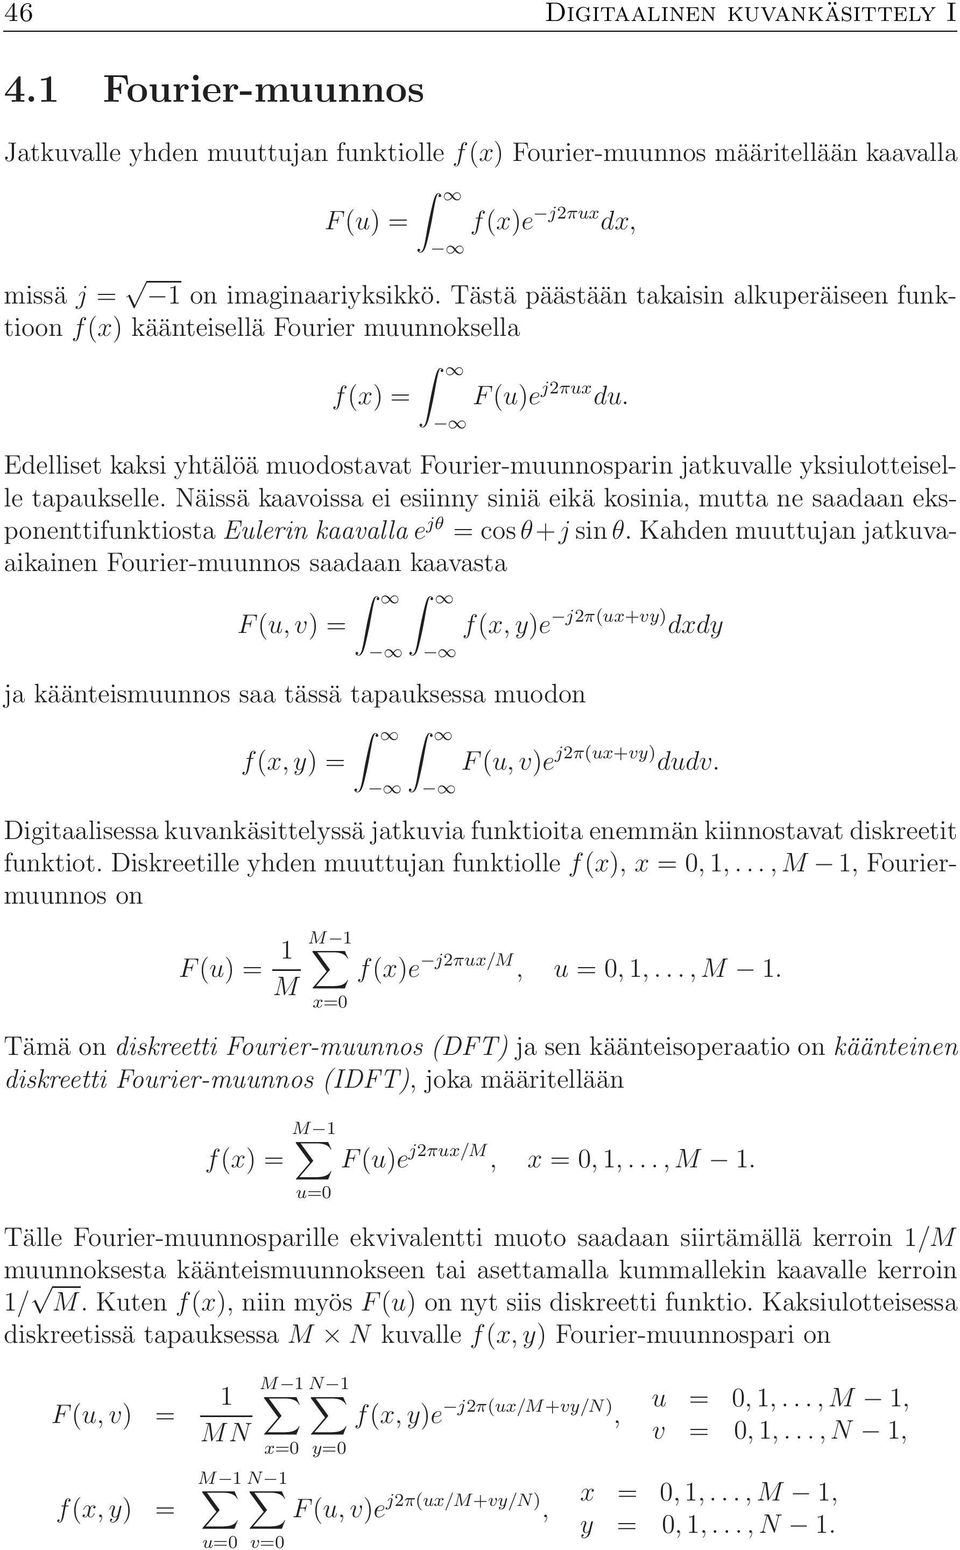 Edelliset kaksi yhtälöä muodostavat Fourier-muunnosparin jatkuvalle yksiulotteiselle tapaukselle.